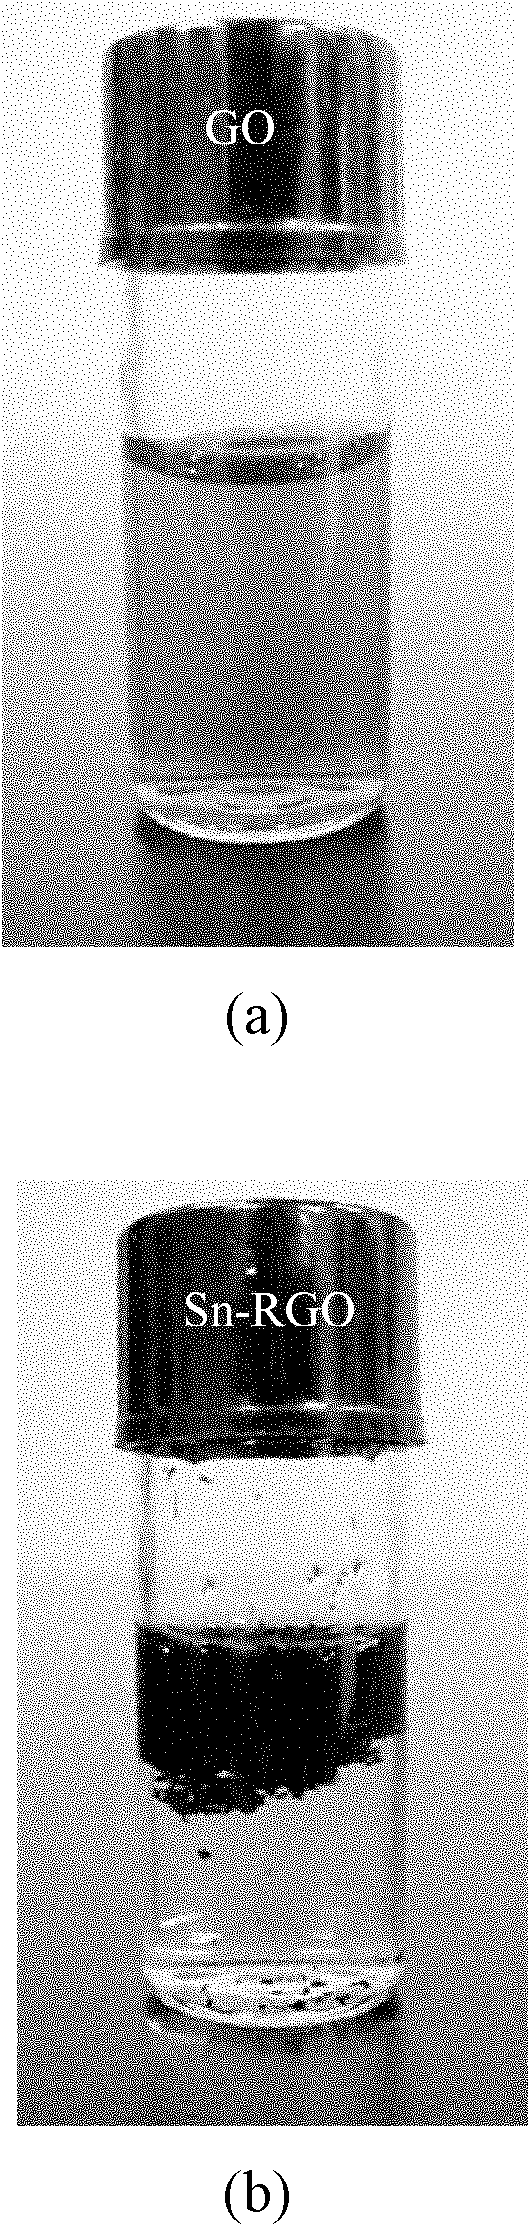 Preparation method for reduced graphene oxide